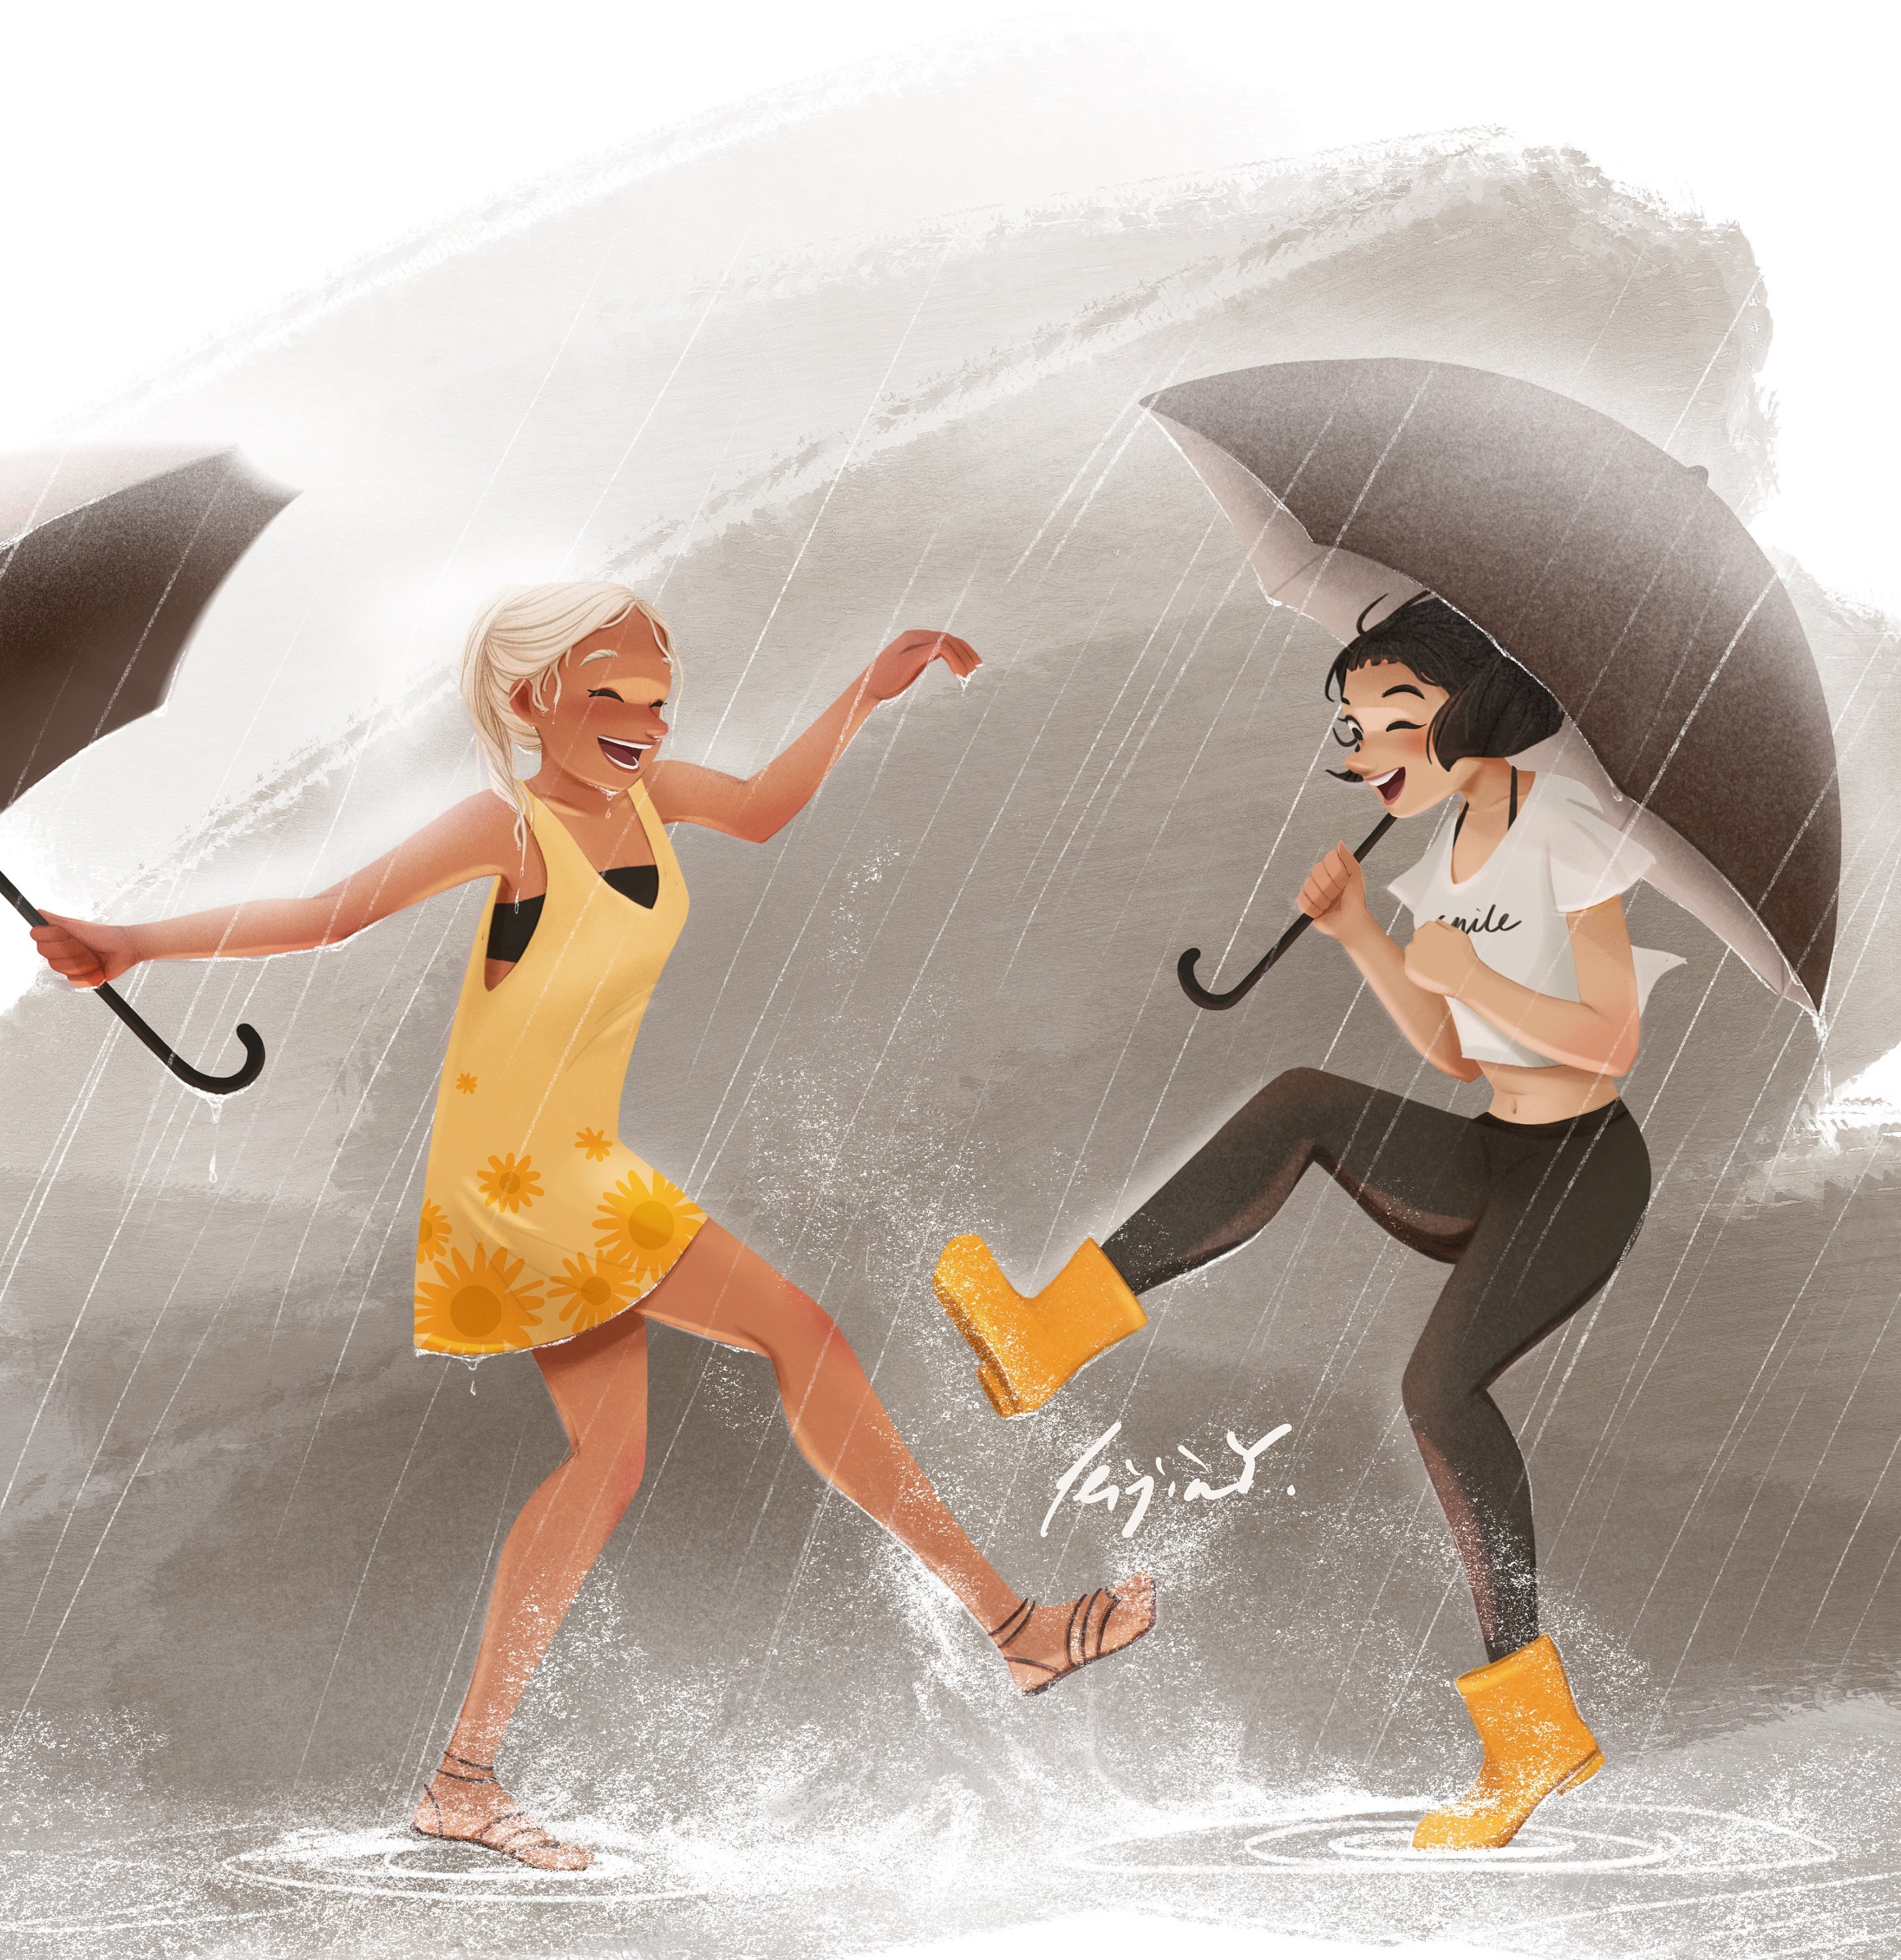 Невзирая на дождь. Радоваться жизни иллюстрации. Радоваться жизни самой радоваться вместе. Наслаждаться жизнью. Радоваться дождю.